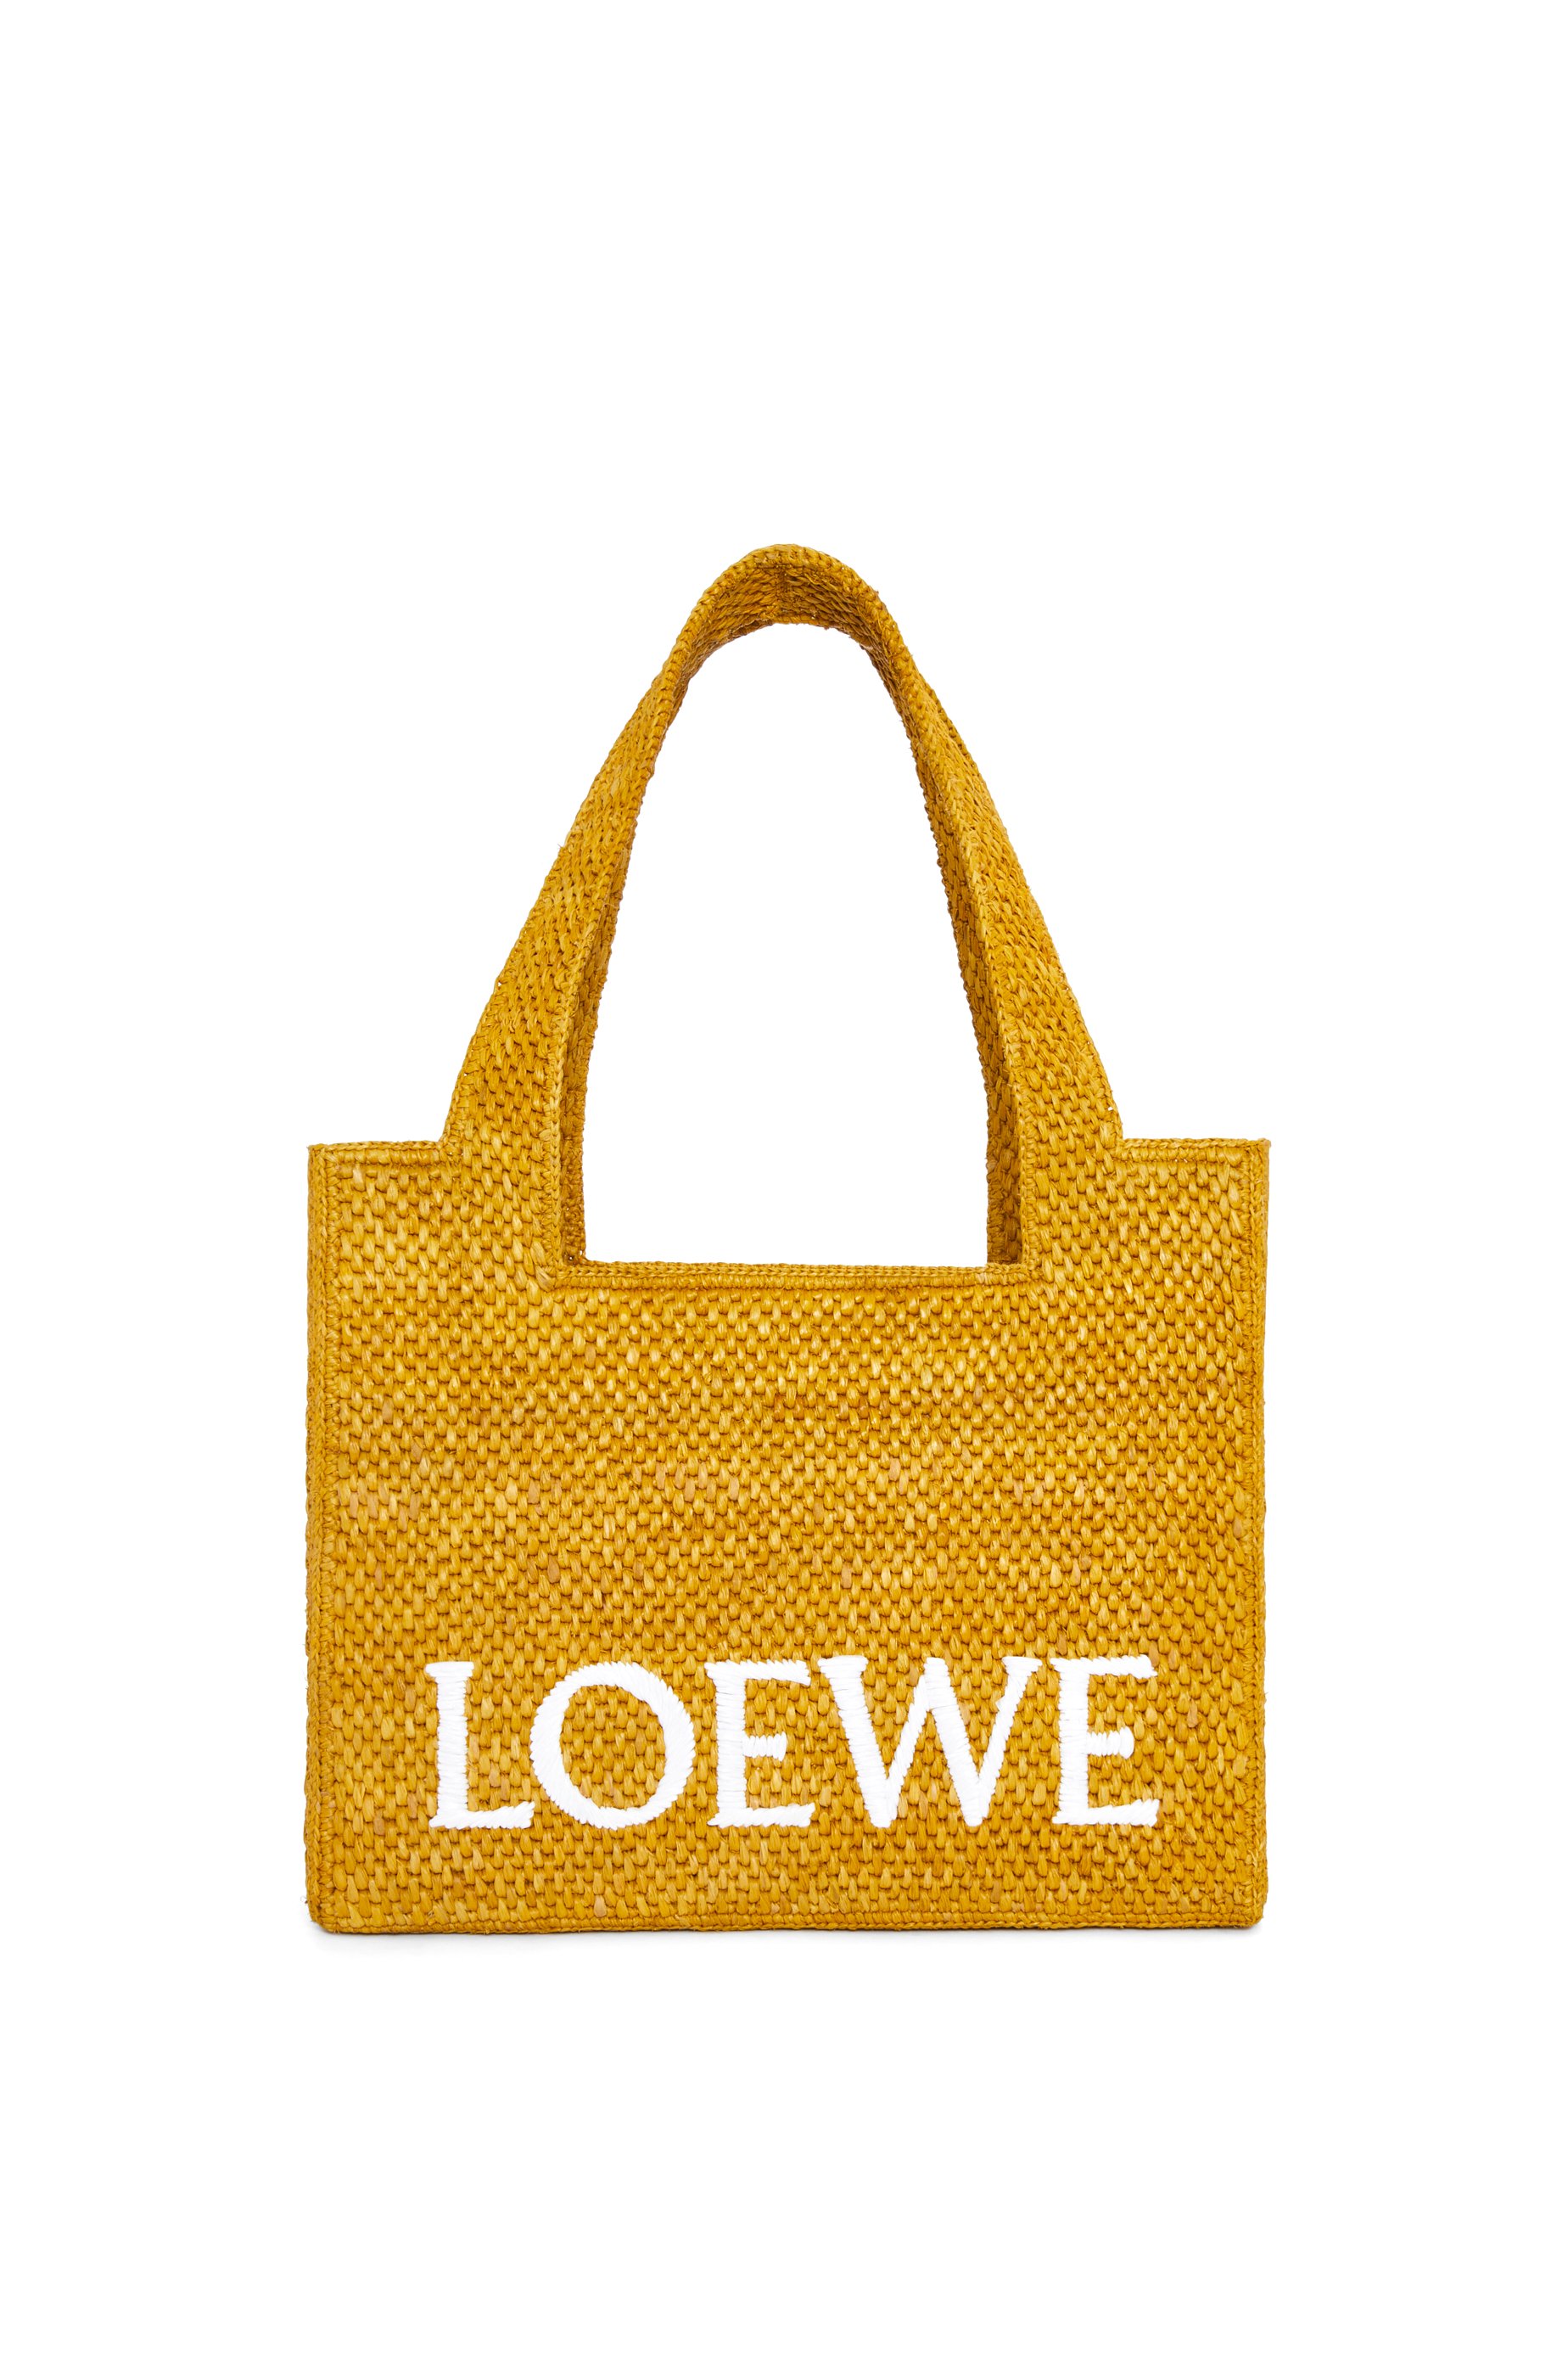 Altijd schuintrekken Verdrag Luxury bags for women - LOEWE